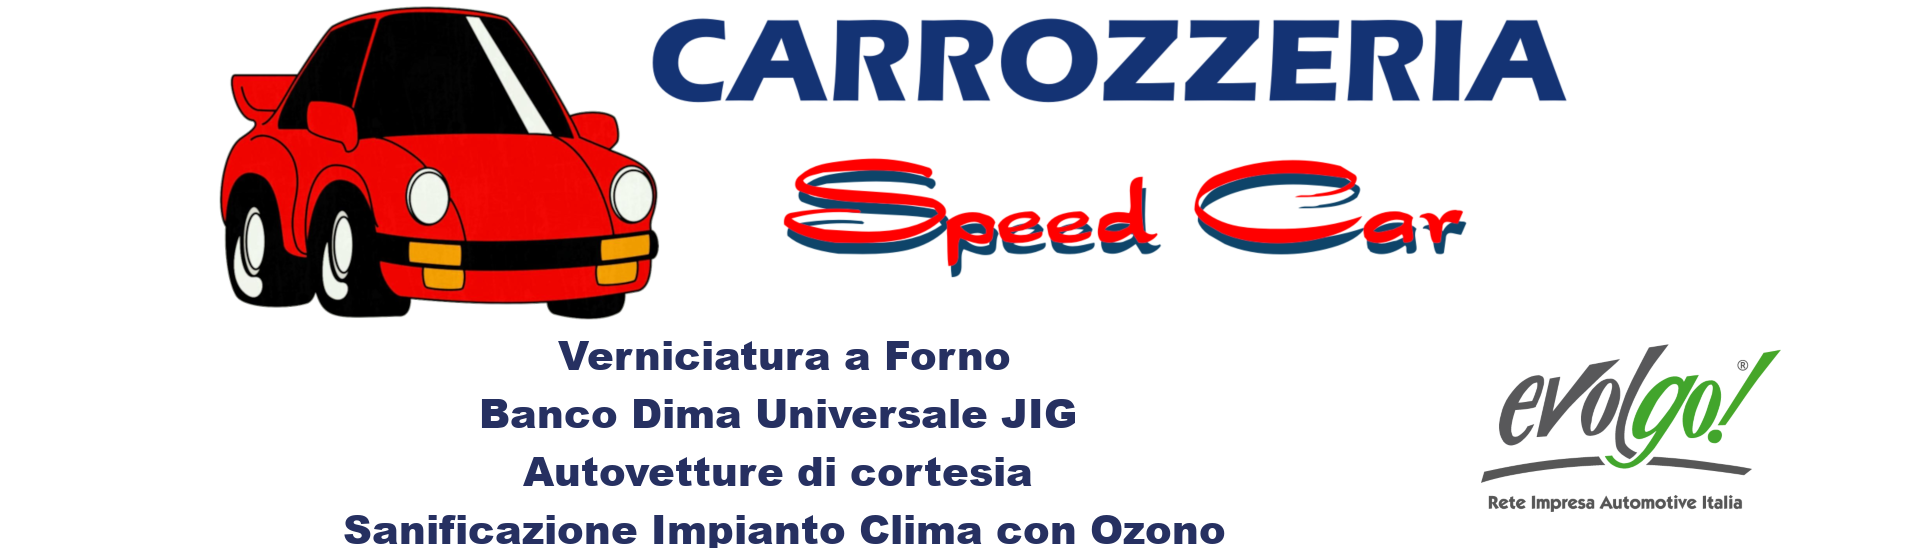 CARROZZERIA SPEED CAR SNC DI PINCIROLI & OTTONELLO